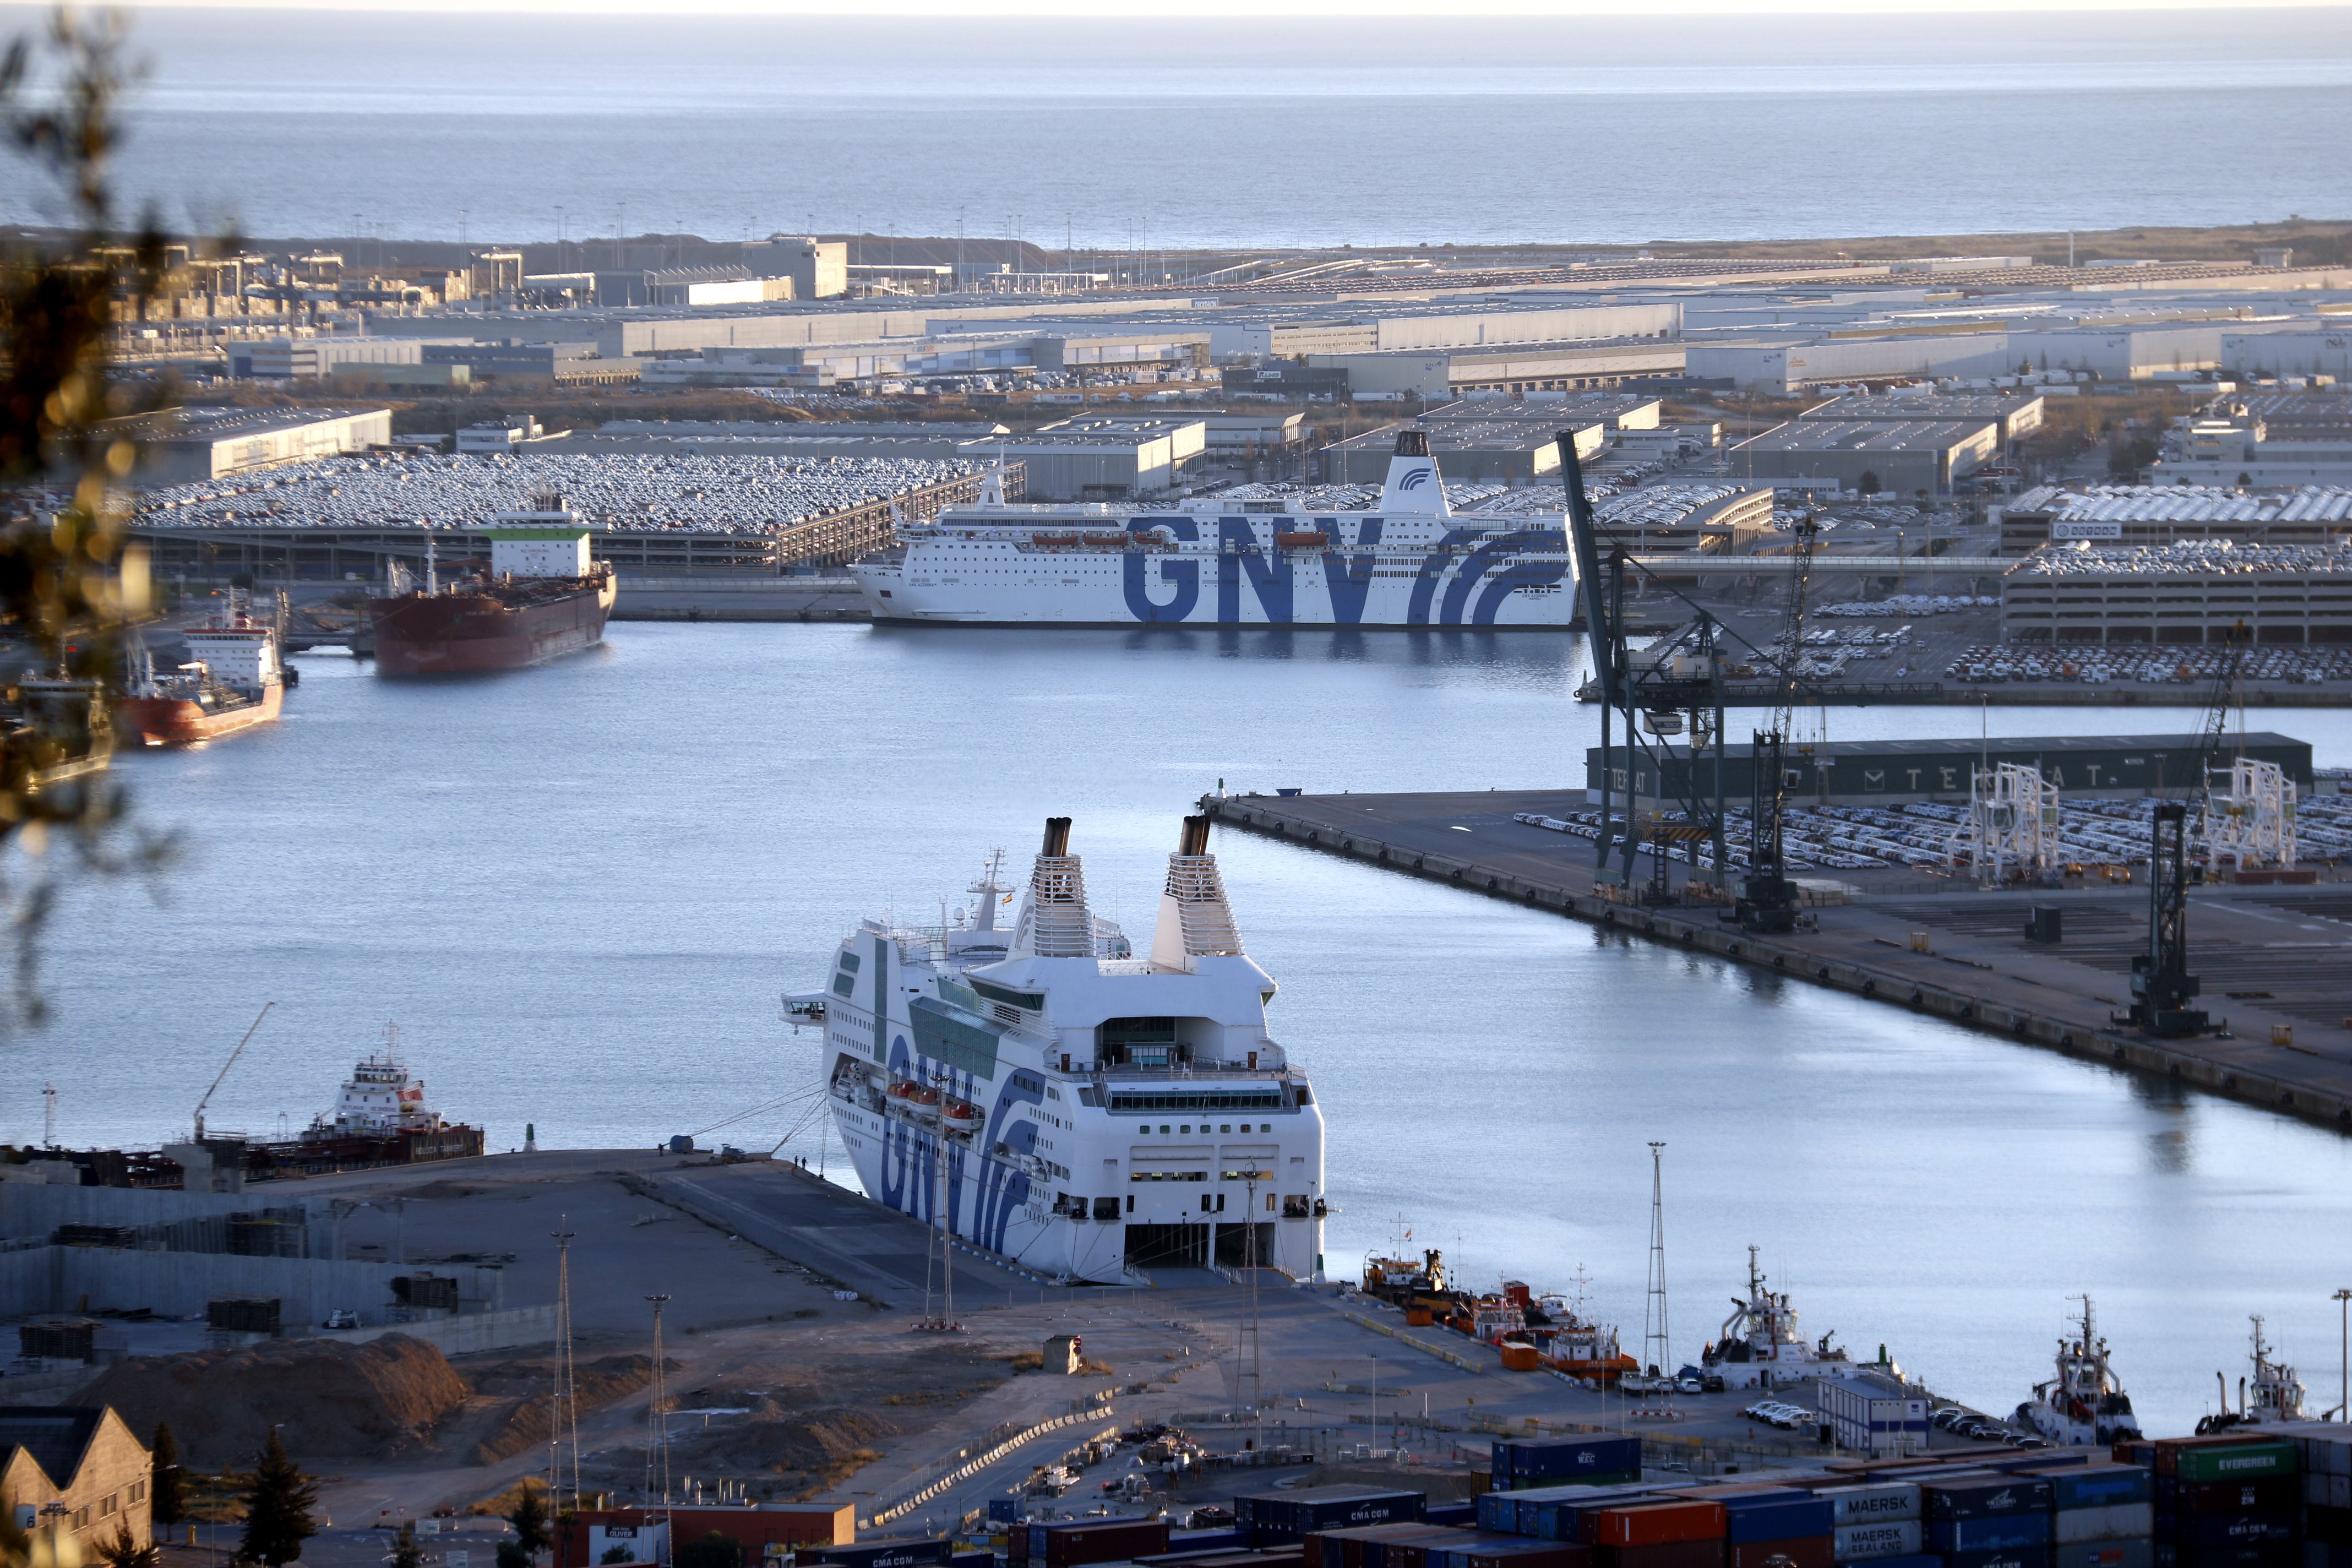 Chocan dos barcos en el puerto de Barcelona